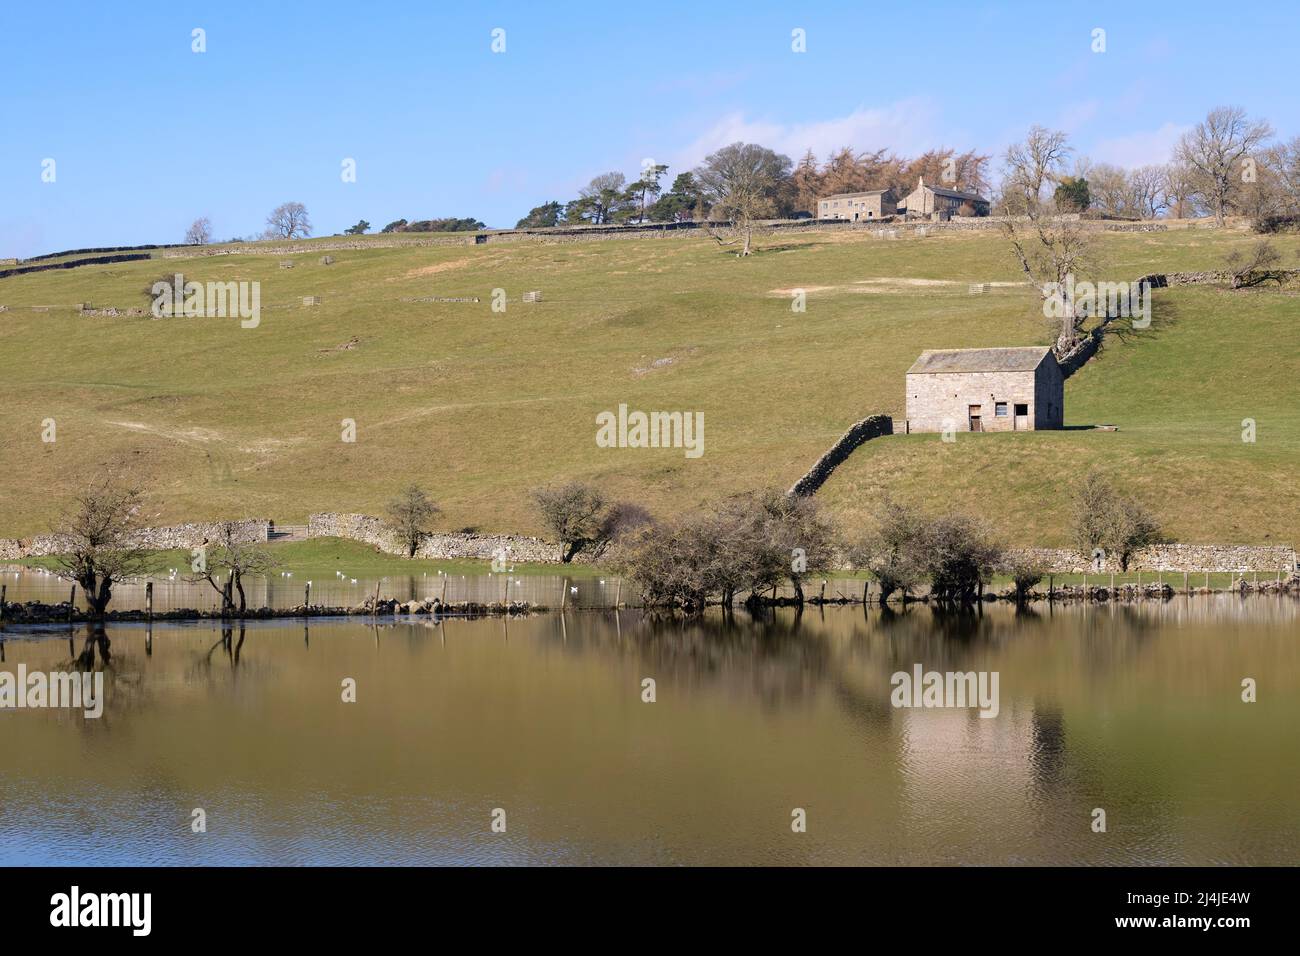 Campi allagati vicino Reeth a Swaledale, Yorkshire Dales National Park. Iconico fienile in pietra e muri in pietra asciutta si riflettono nell'acqua ferma. Foto Stock